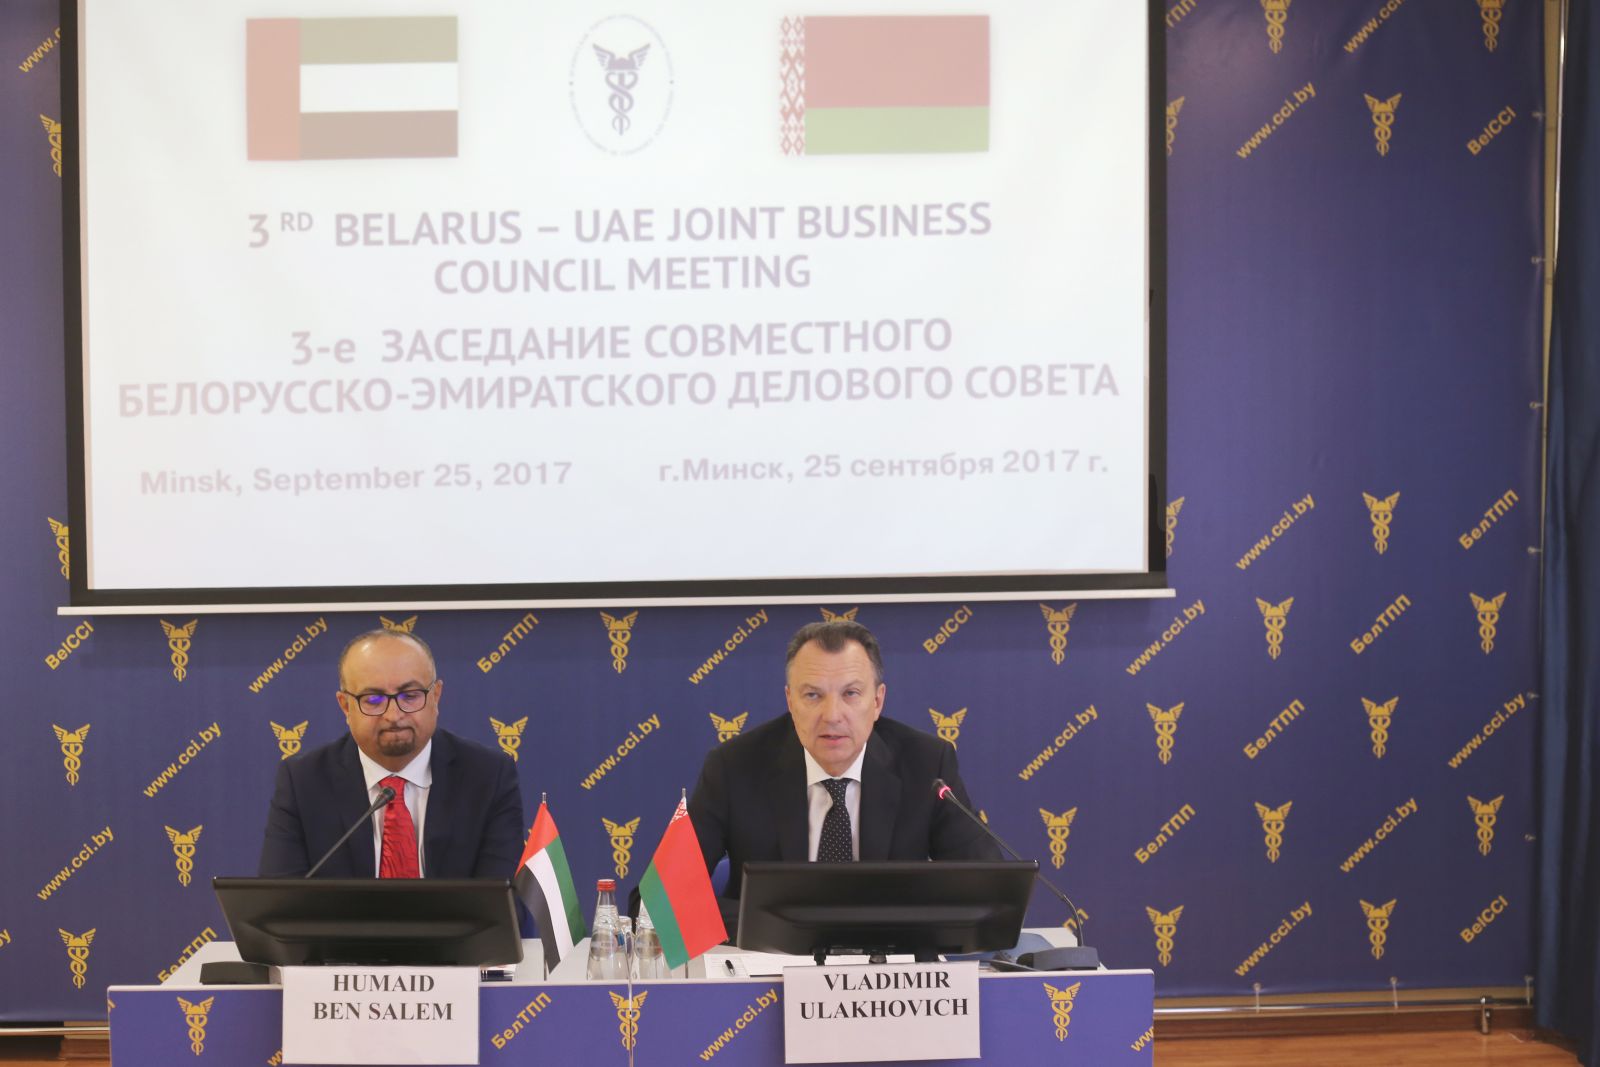 Заседание Белорусско-Эмиратского Делового совета